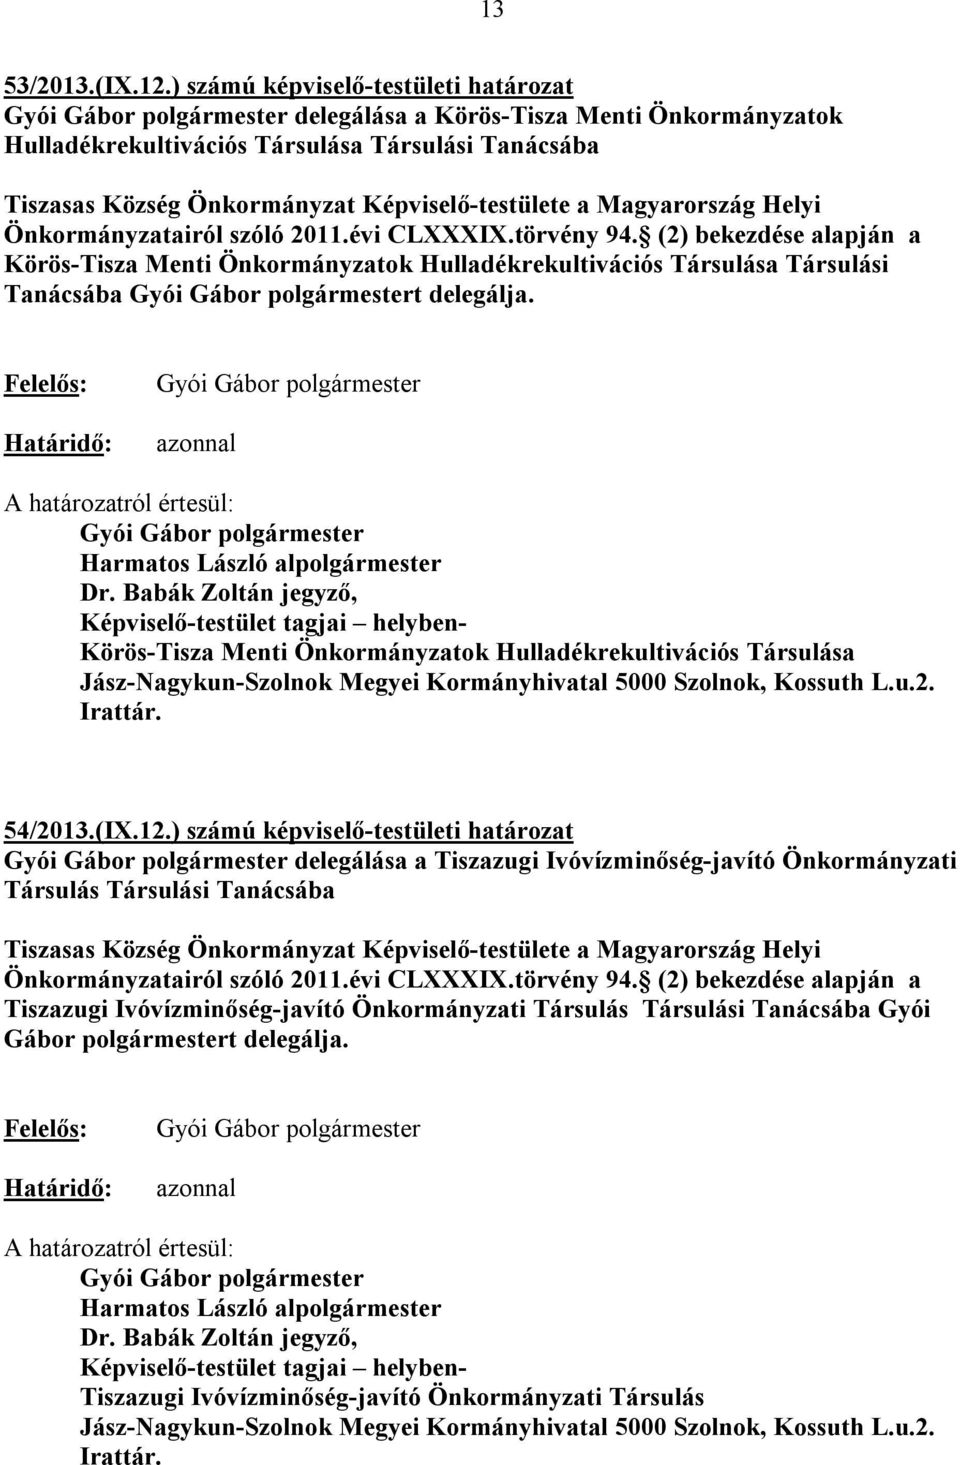 Helyi Önkormányzatairól szóló 2011.évi CLXXXIX.törvény 94. (2) bekezdése alapján a Körös-Tisza Menti Önkormányzatok Hulladékrekultivációs Társulása Társulási Tanácsába t delegálja.